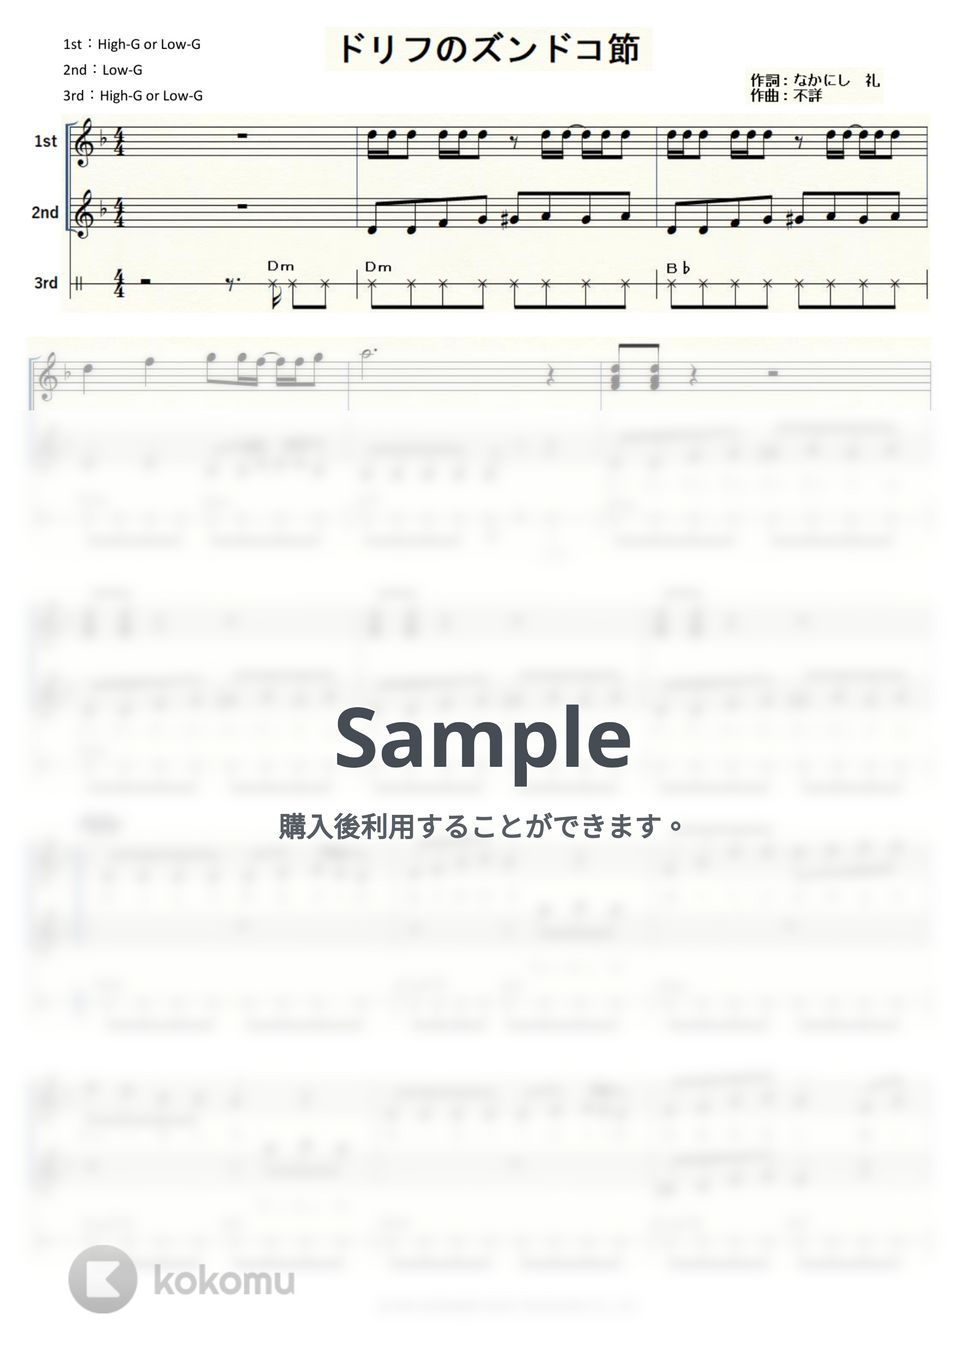 ザ・ドリフターズ - ドリフのズンドコ節 (ウクレレトリオ/中級) by ukulelepapa